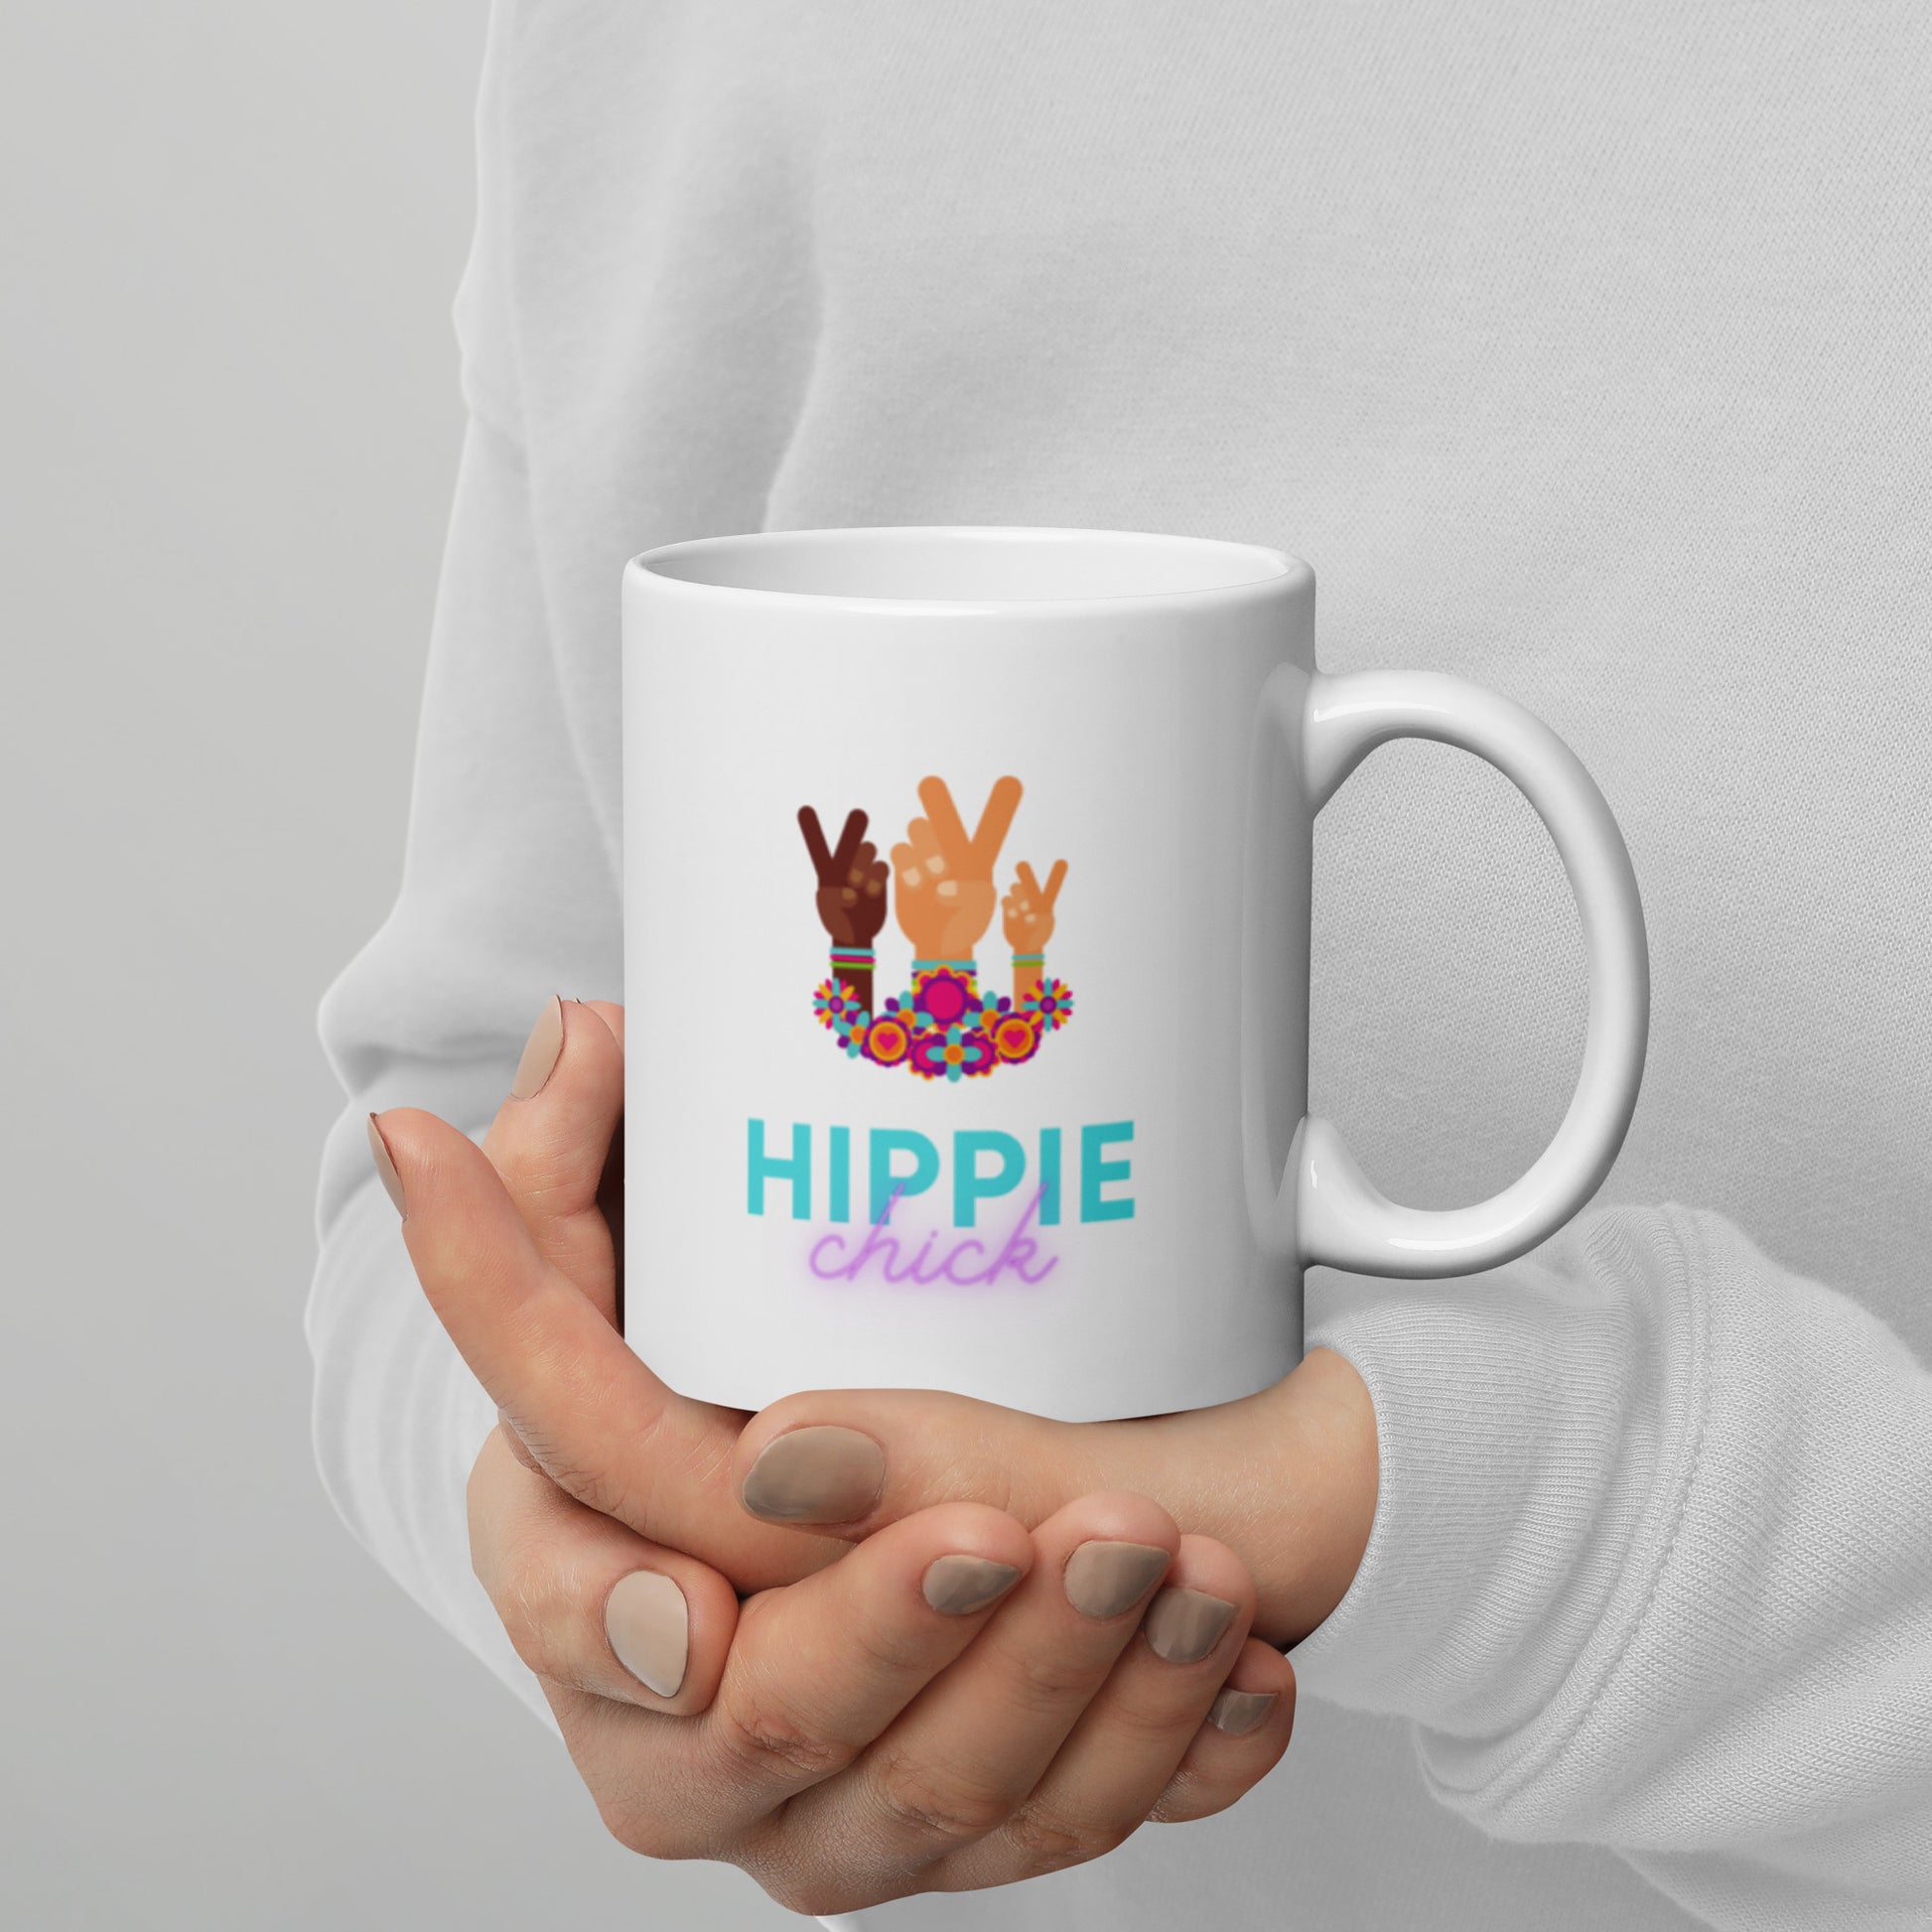 Hippie Chick Mug - The Good Life Vibe